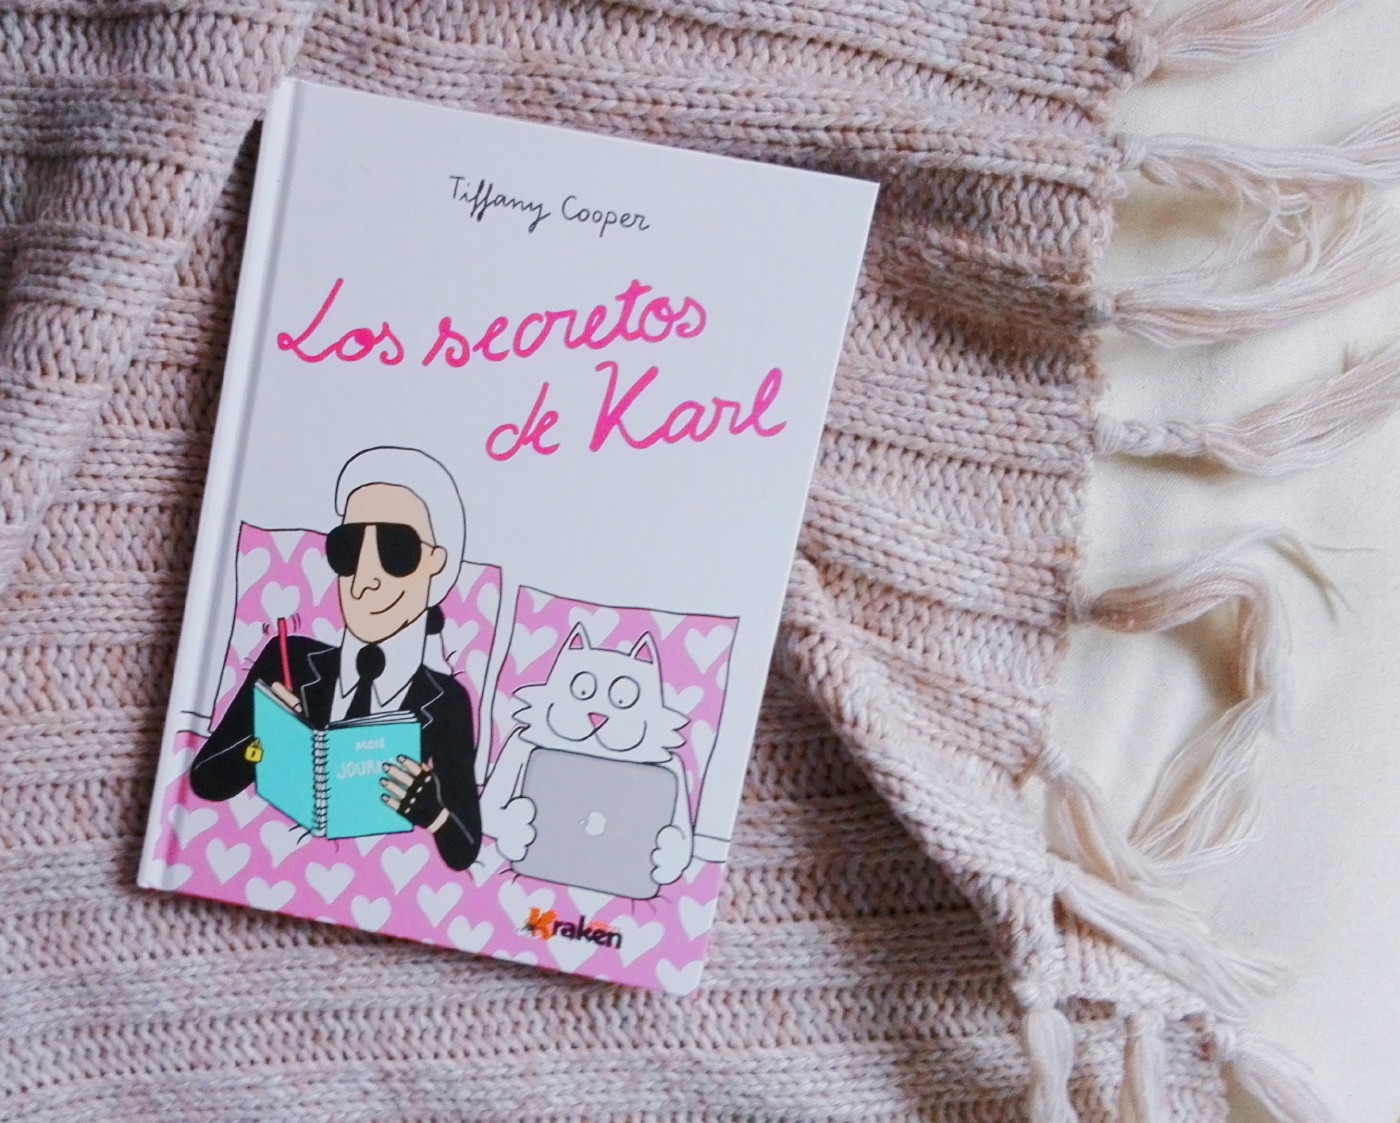 Libro: Los Secretos de Karl (Tiffany Cooper) 🐱